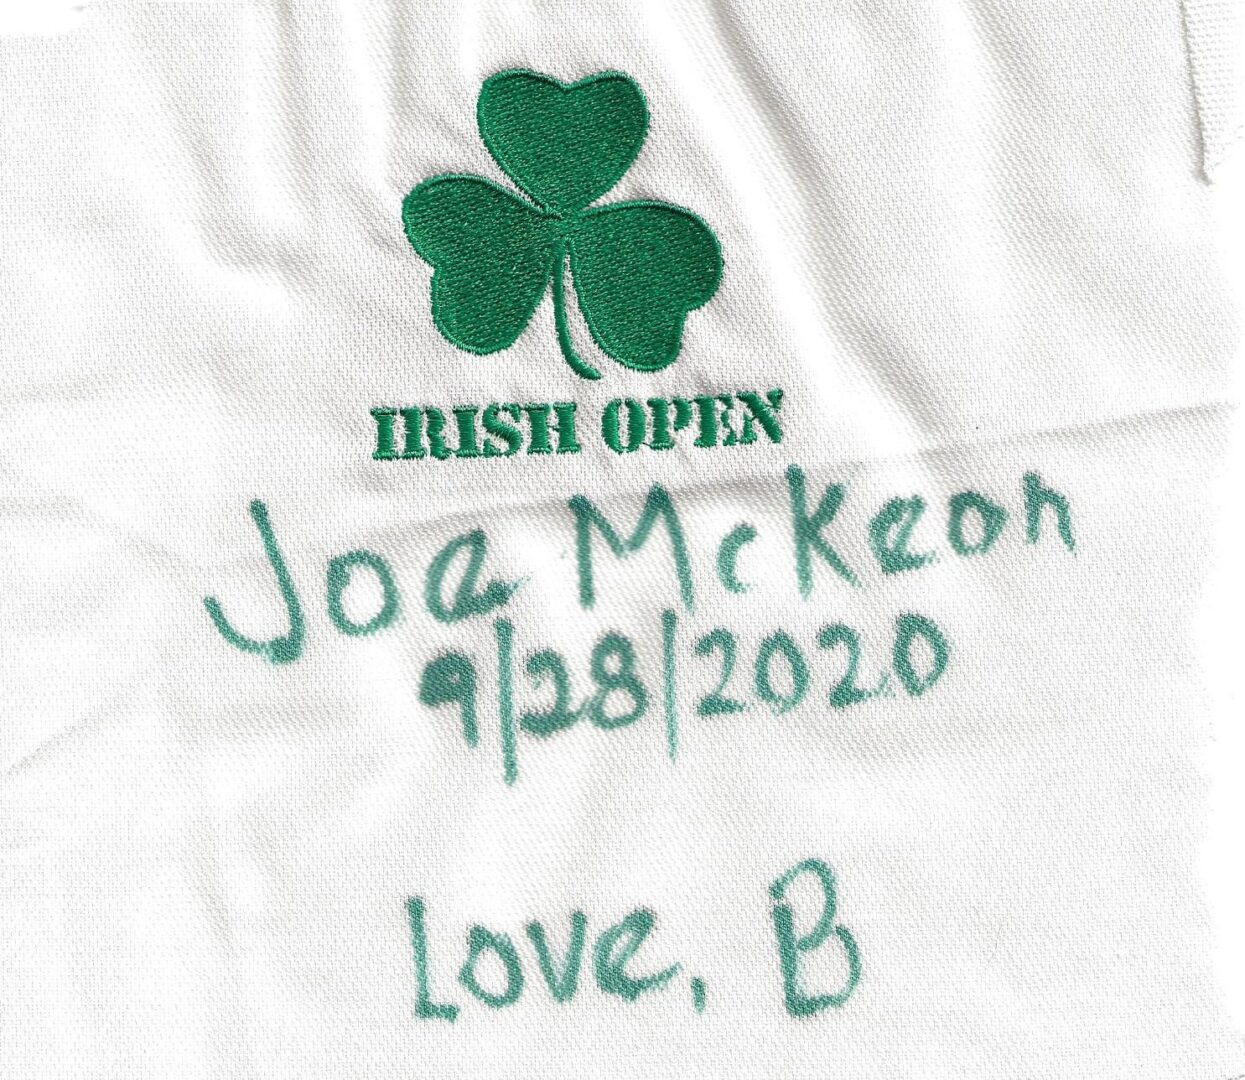 IN MEMORY OF JOE McKEON - 9/28/2020